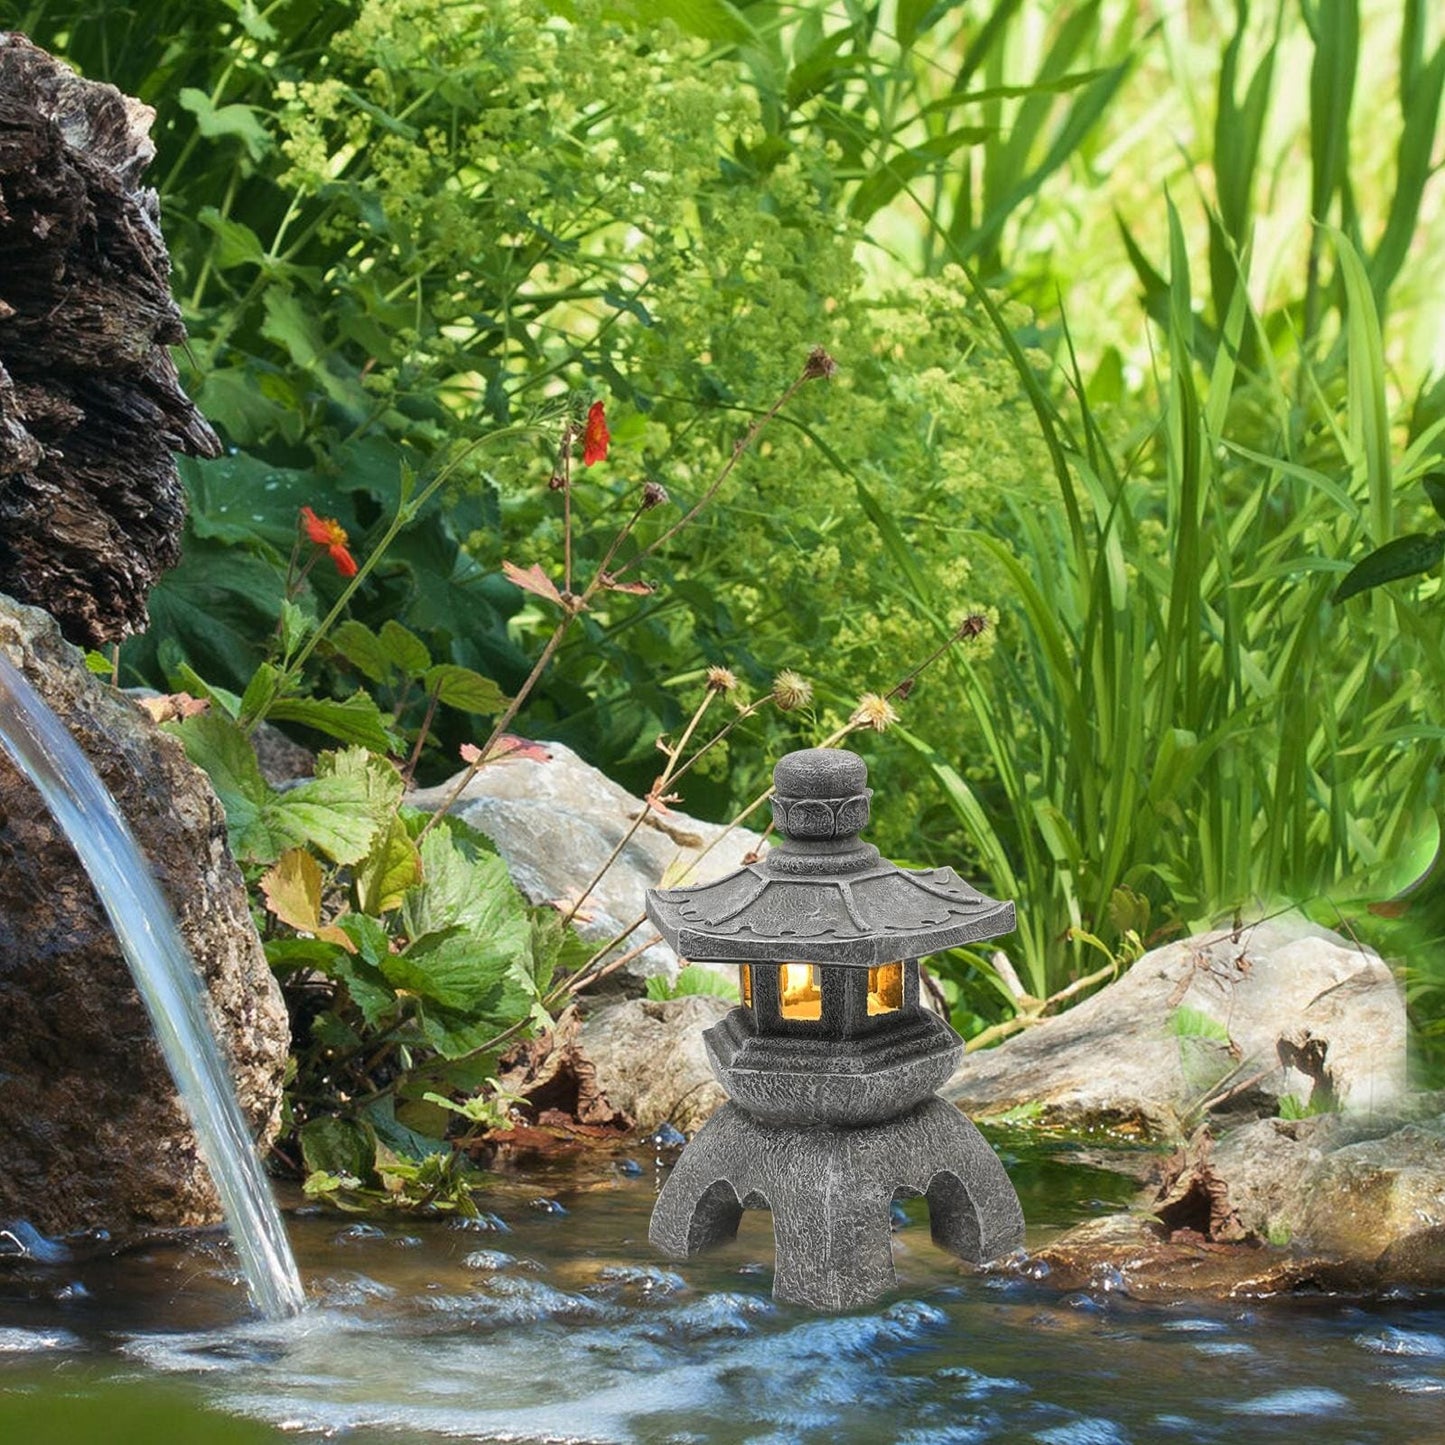 Lanterne de Jardin Japonaise Solaire - Décoration Extérieure Traditionnelle